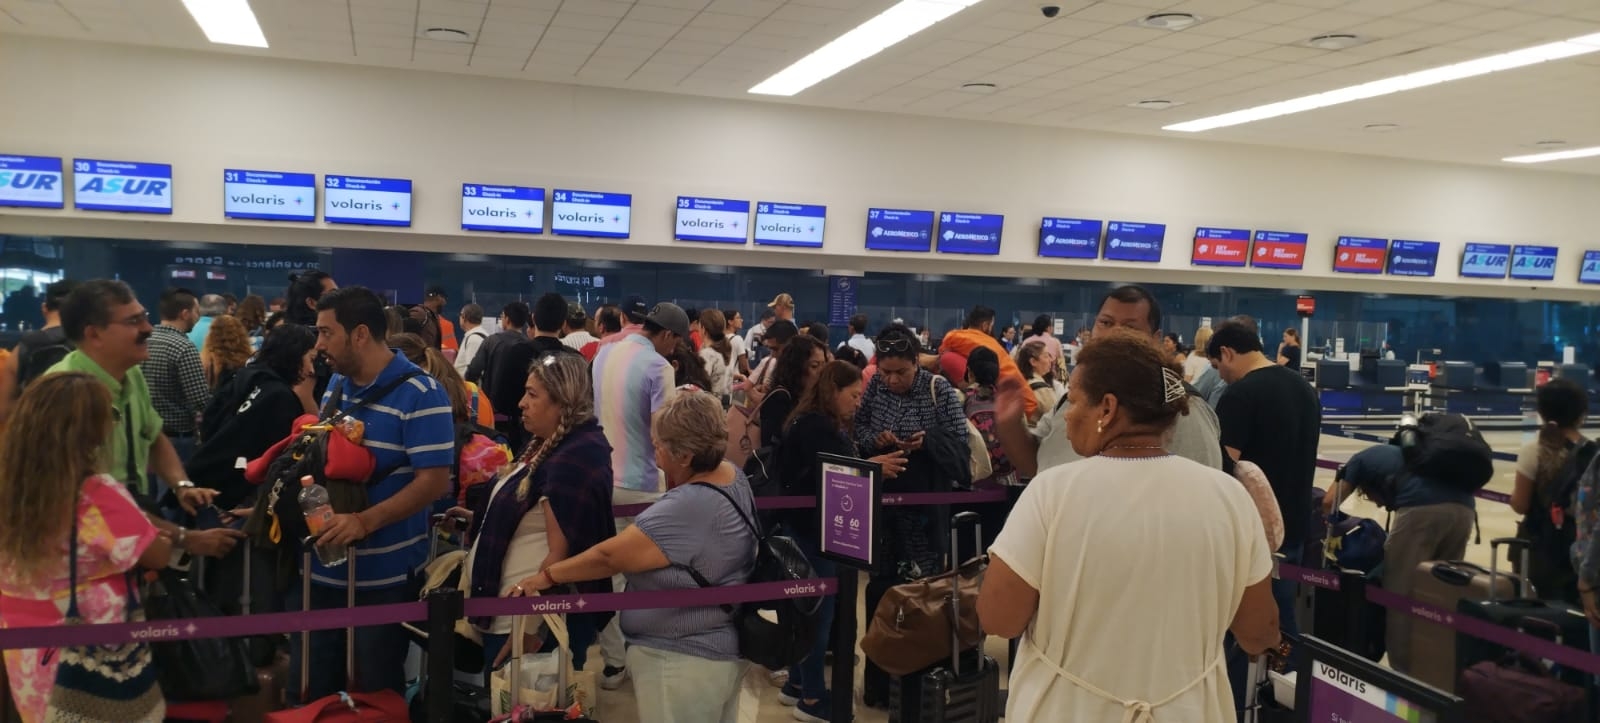 Se registró gran movilización de pasajeros en el aeropuerto de Mérida